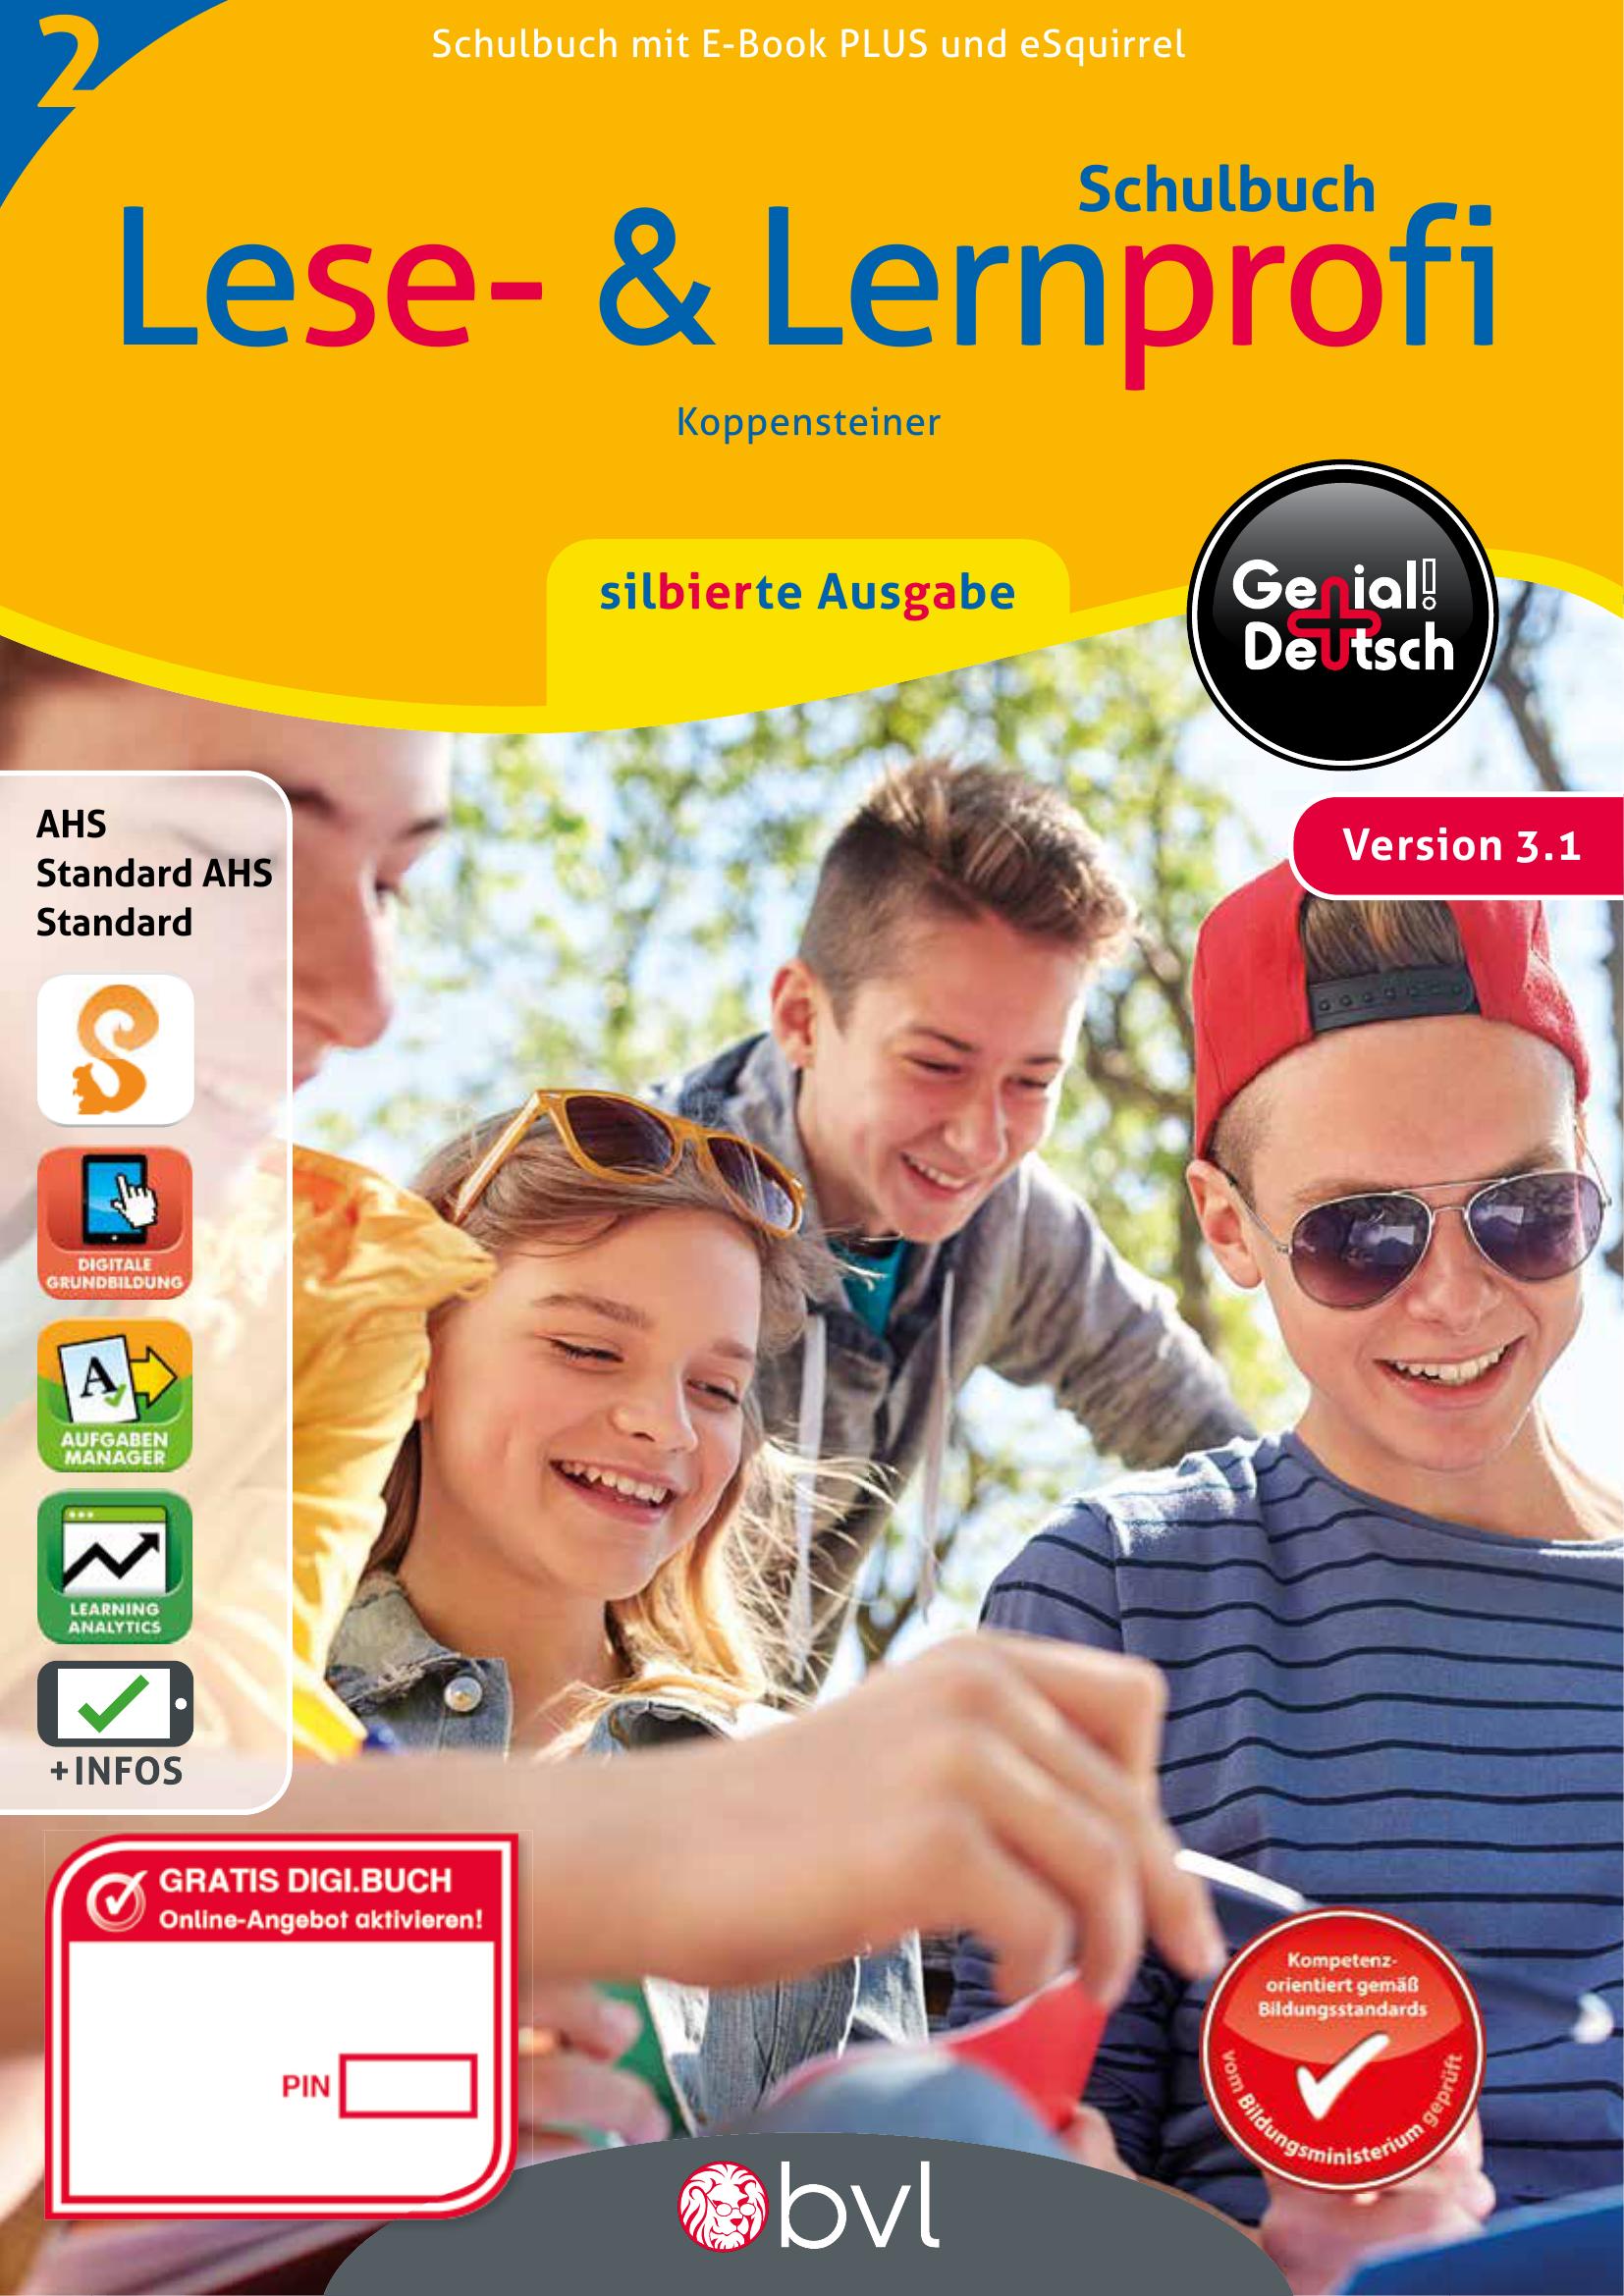 Genial! Deutsch 2 – Lese- und Lernprofi v3.1 / Schulbuch silbierte Ausgabe PLUS-Lizenz mit eSquirrel